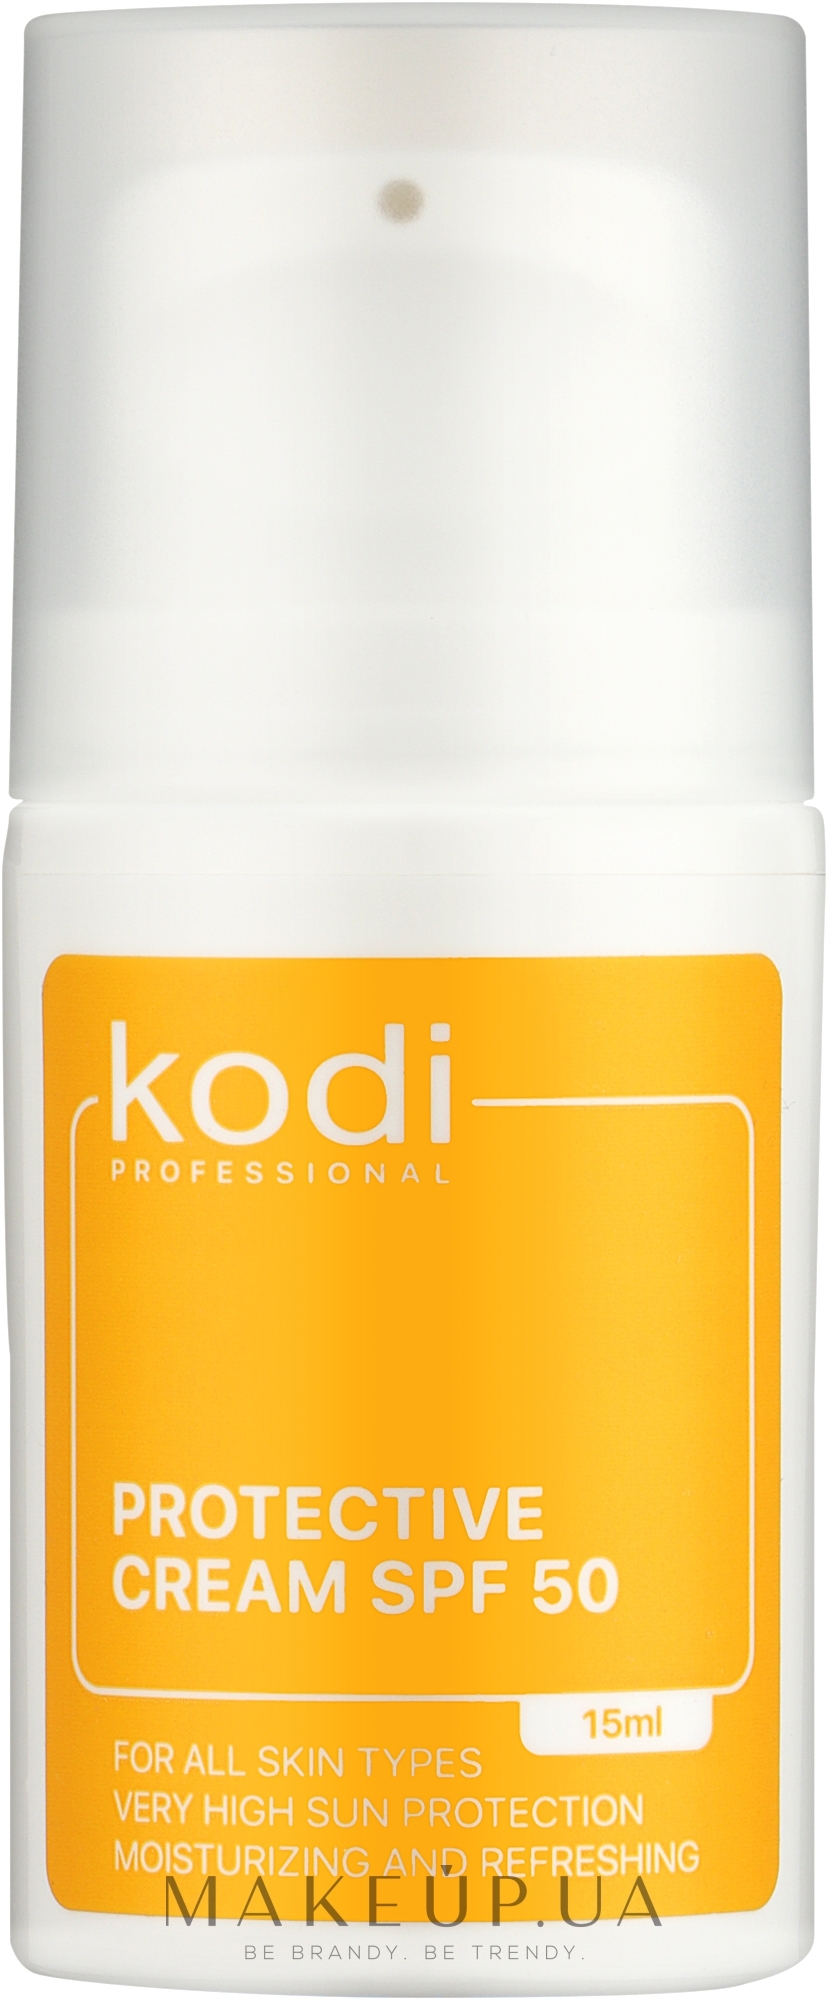 Захисний зволожувальний крем SPF50 - Kodi Professional Protective Cream SPF50 — фото 15ml